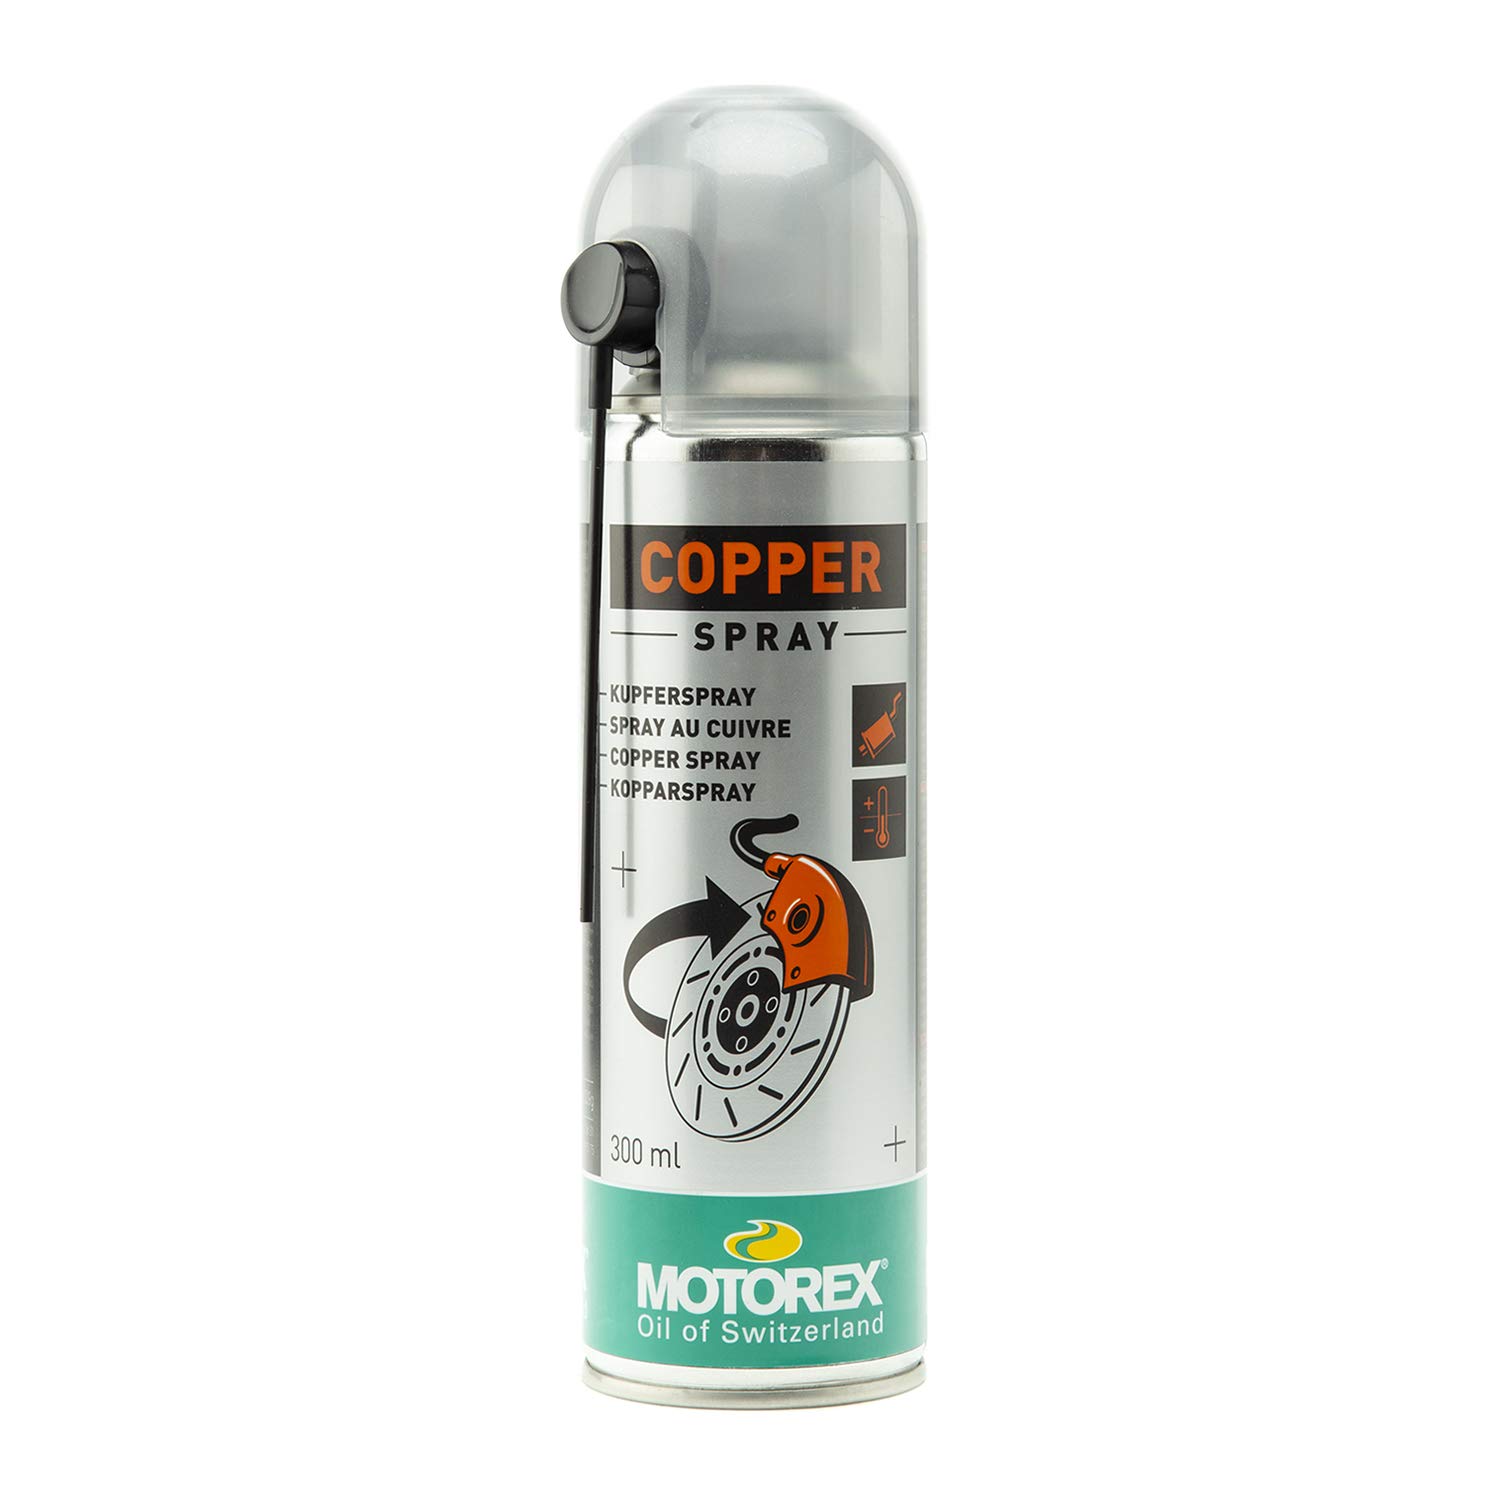 Motorex Copper Spray-300ml von Motorex